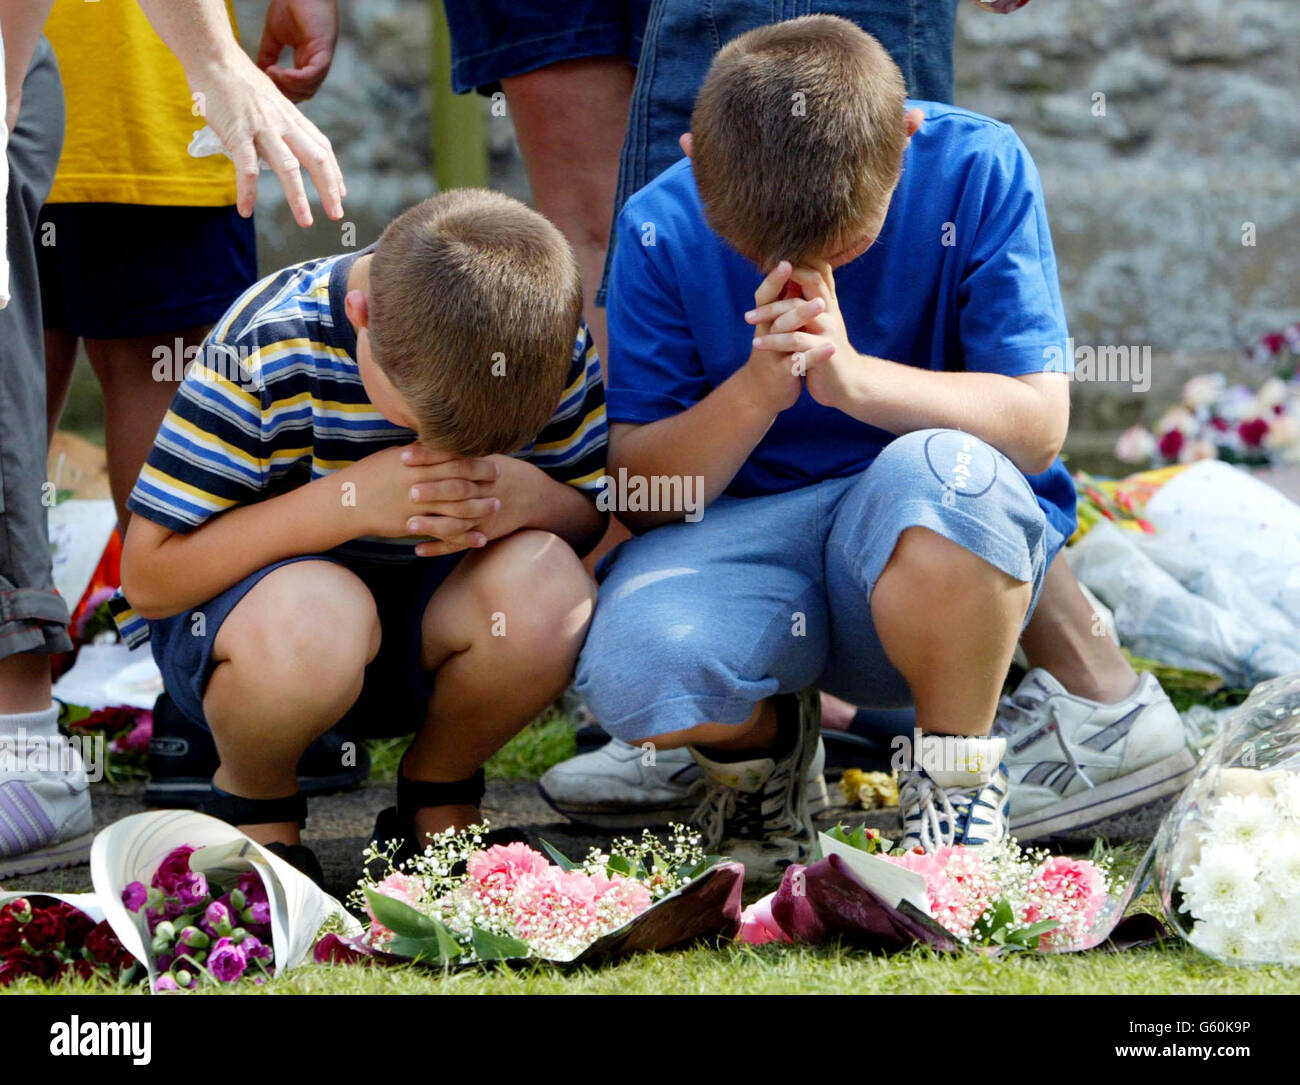 Zwei Jungen legen Blumen und beten in der St. Andrews Church, Soham, Cambs, für die ermordeten Schulmädchen Holly Wells & Jessica Chapman. Stockfoto